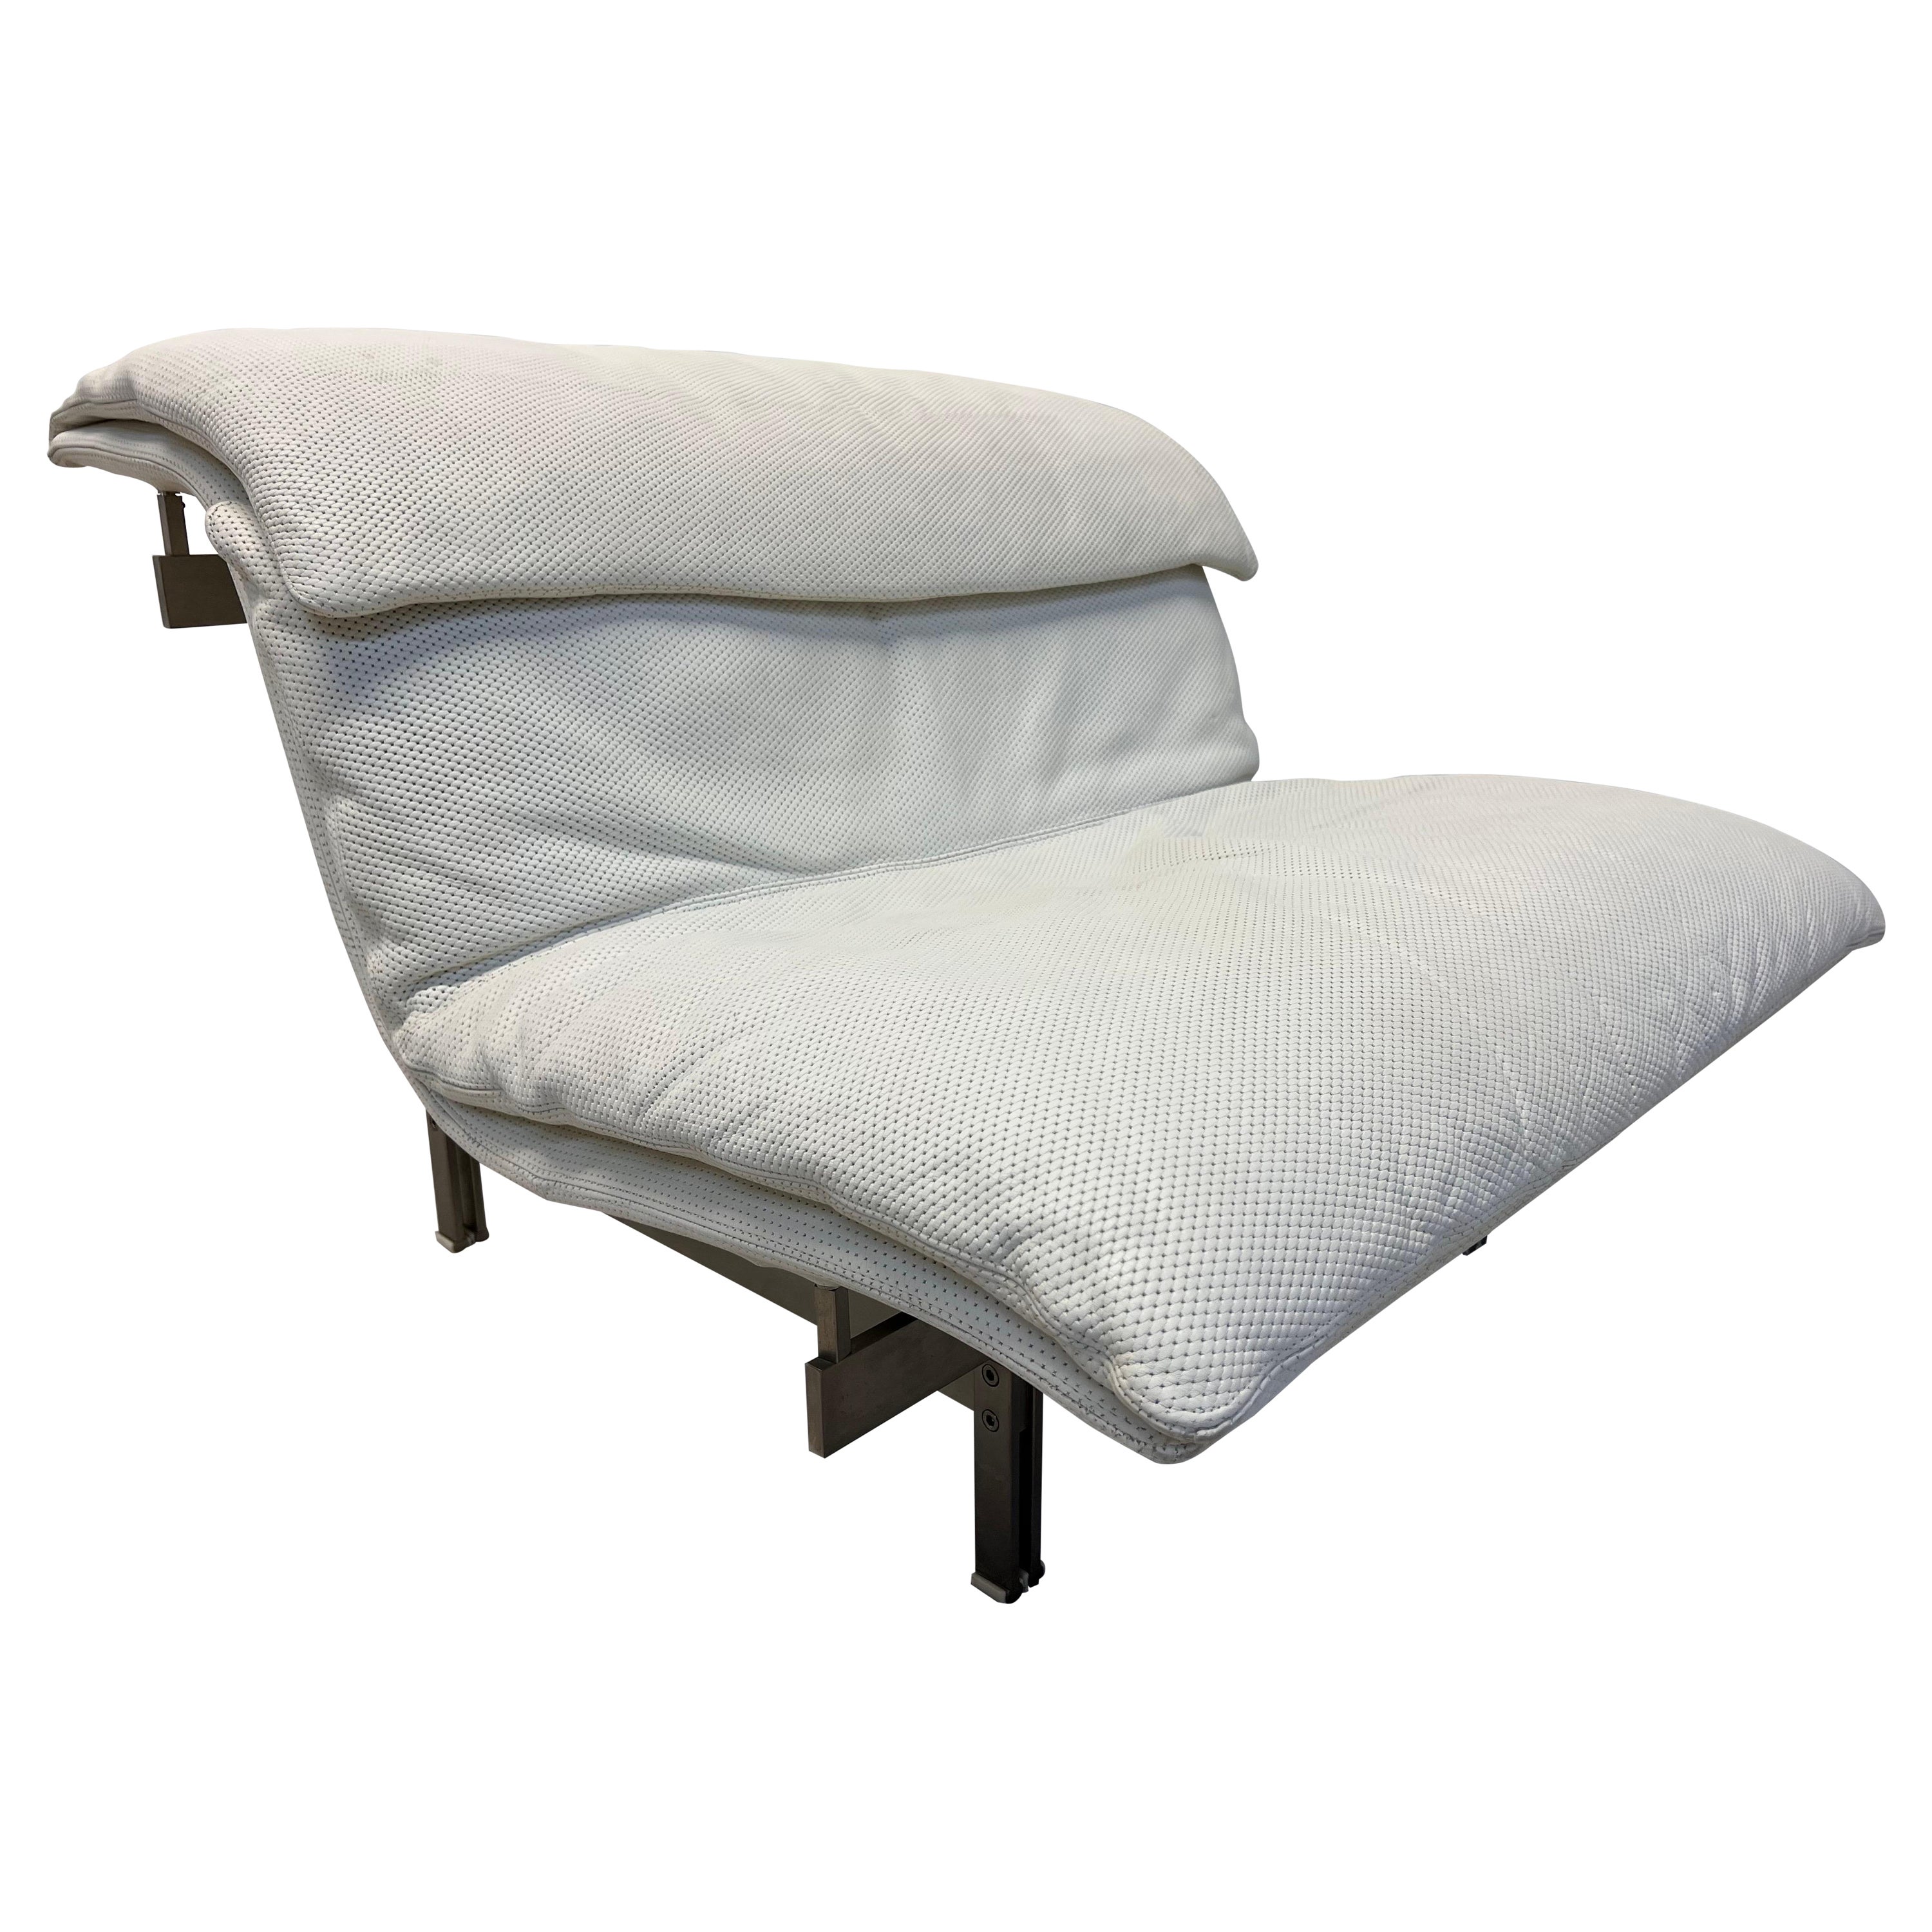 Giovanni Offredi White Leather Onda Wave Lounge Chair for Saporiti